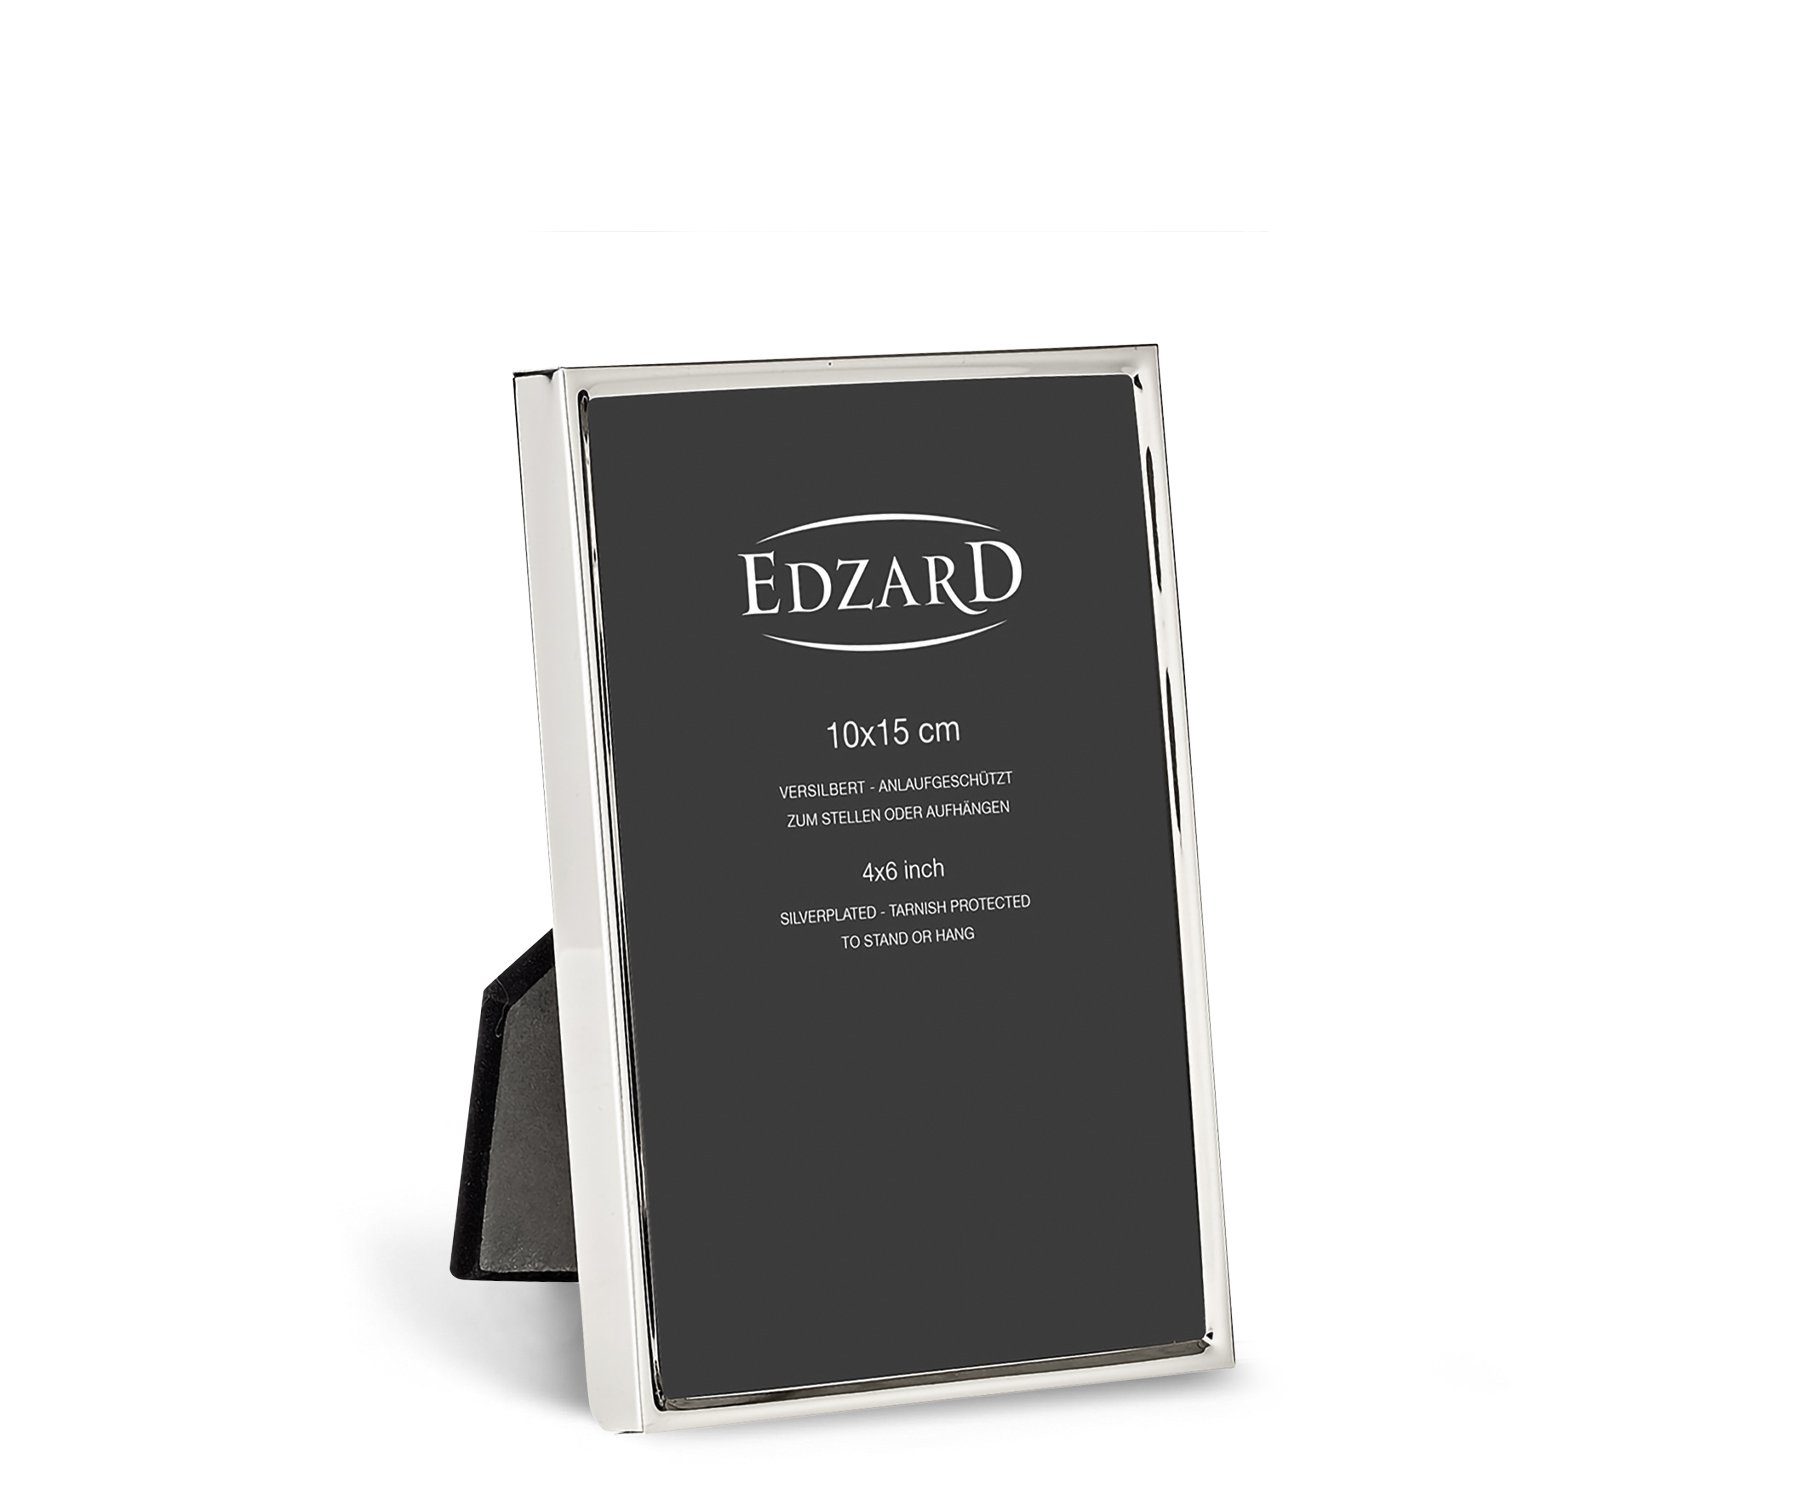 EDZARD Bilderrahmen , versilbert und anlaufgeschützt, für 10x15 cm Foto